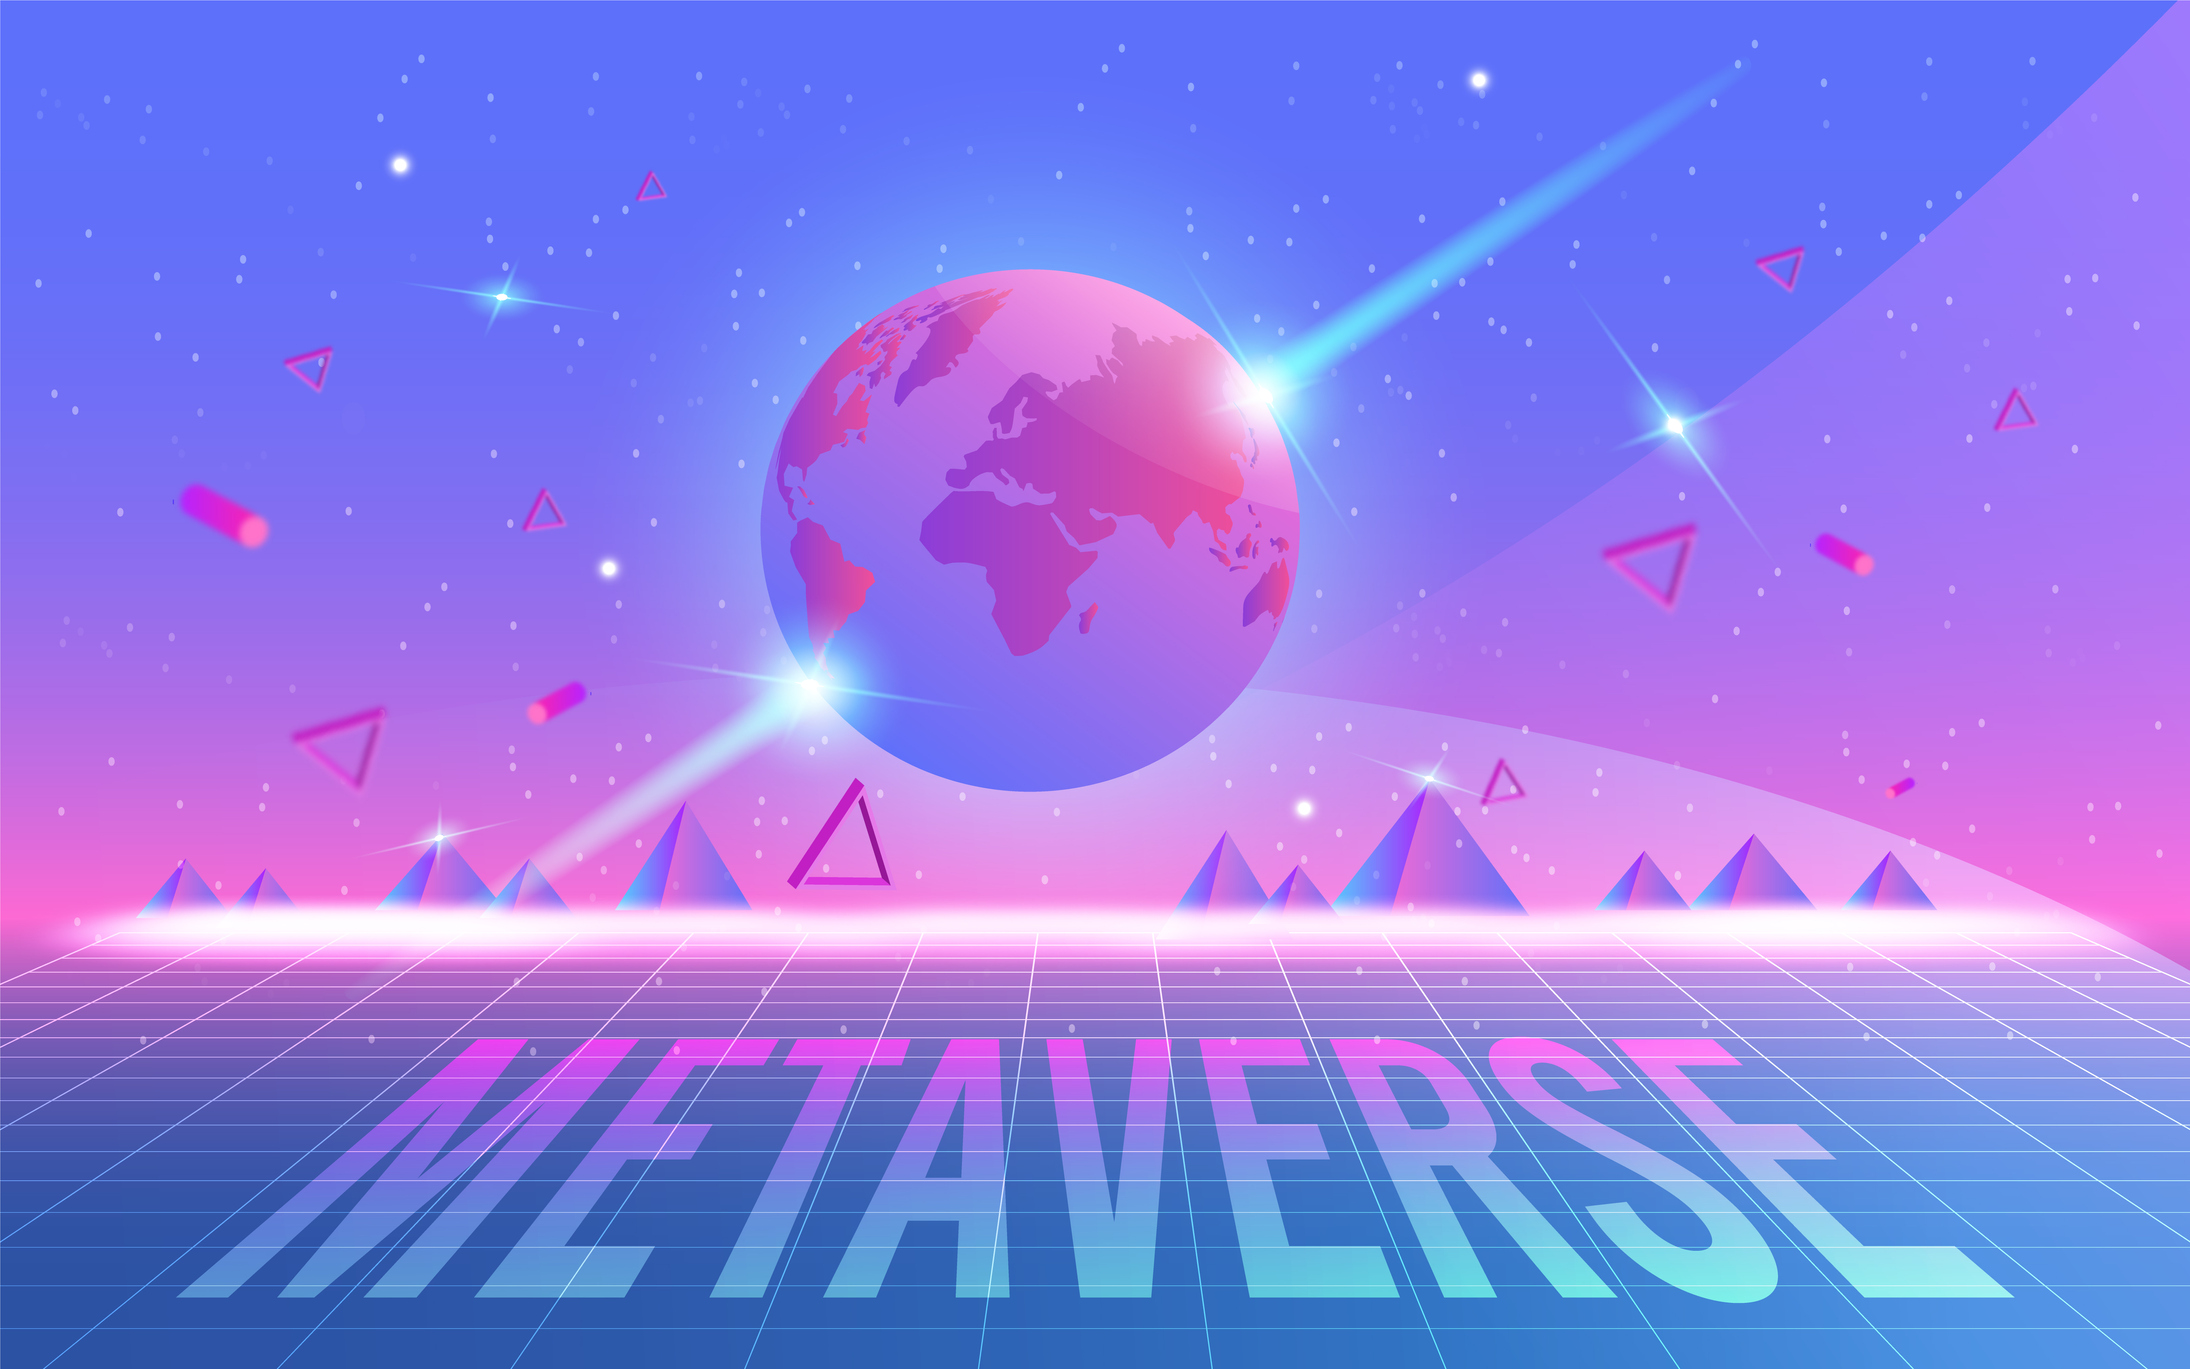 这是一张描绘元宇宙概念的插图，展示了地球在数字化网格上，背景是紫色调的天空和三角形图案，下方有“METAVERSE”字样。